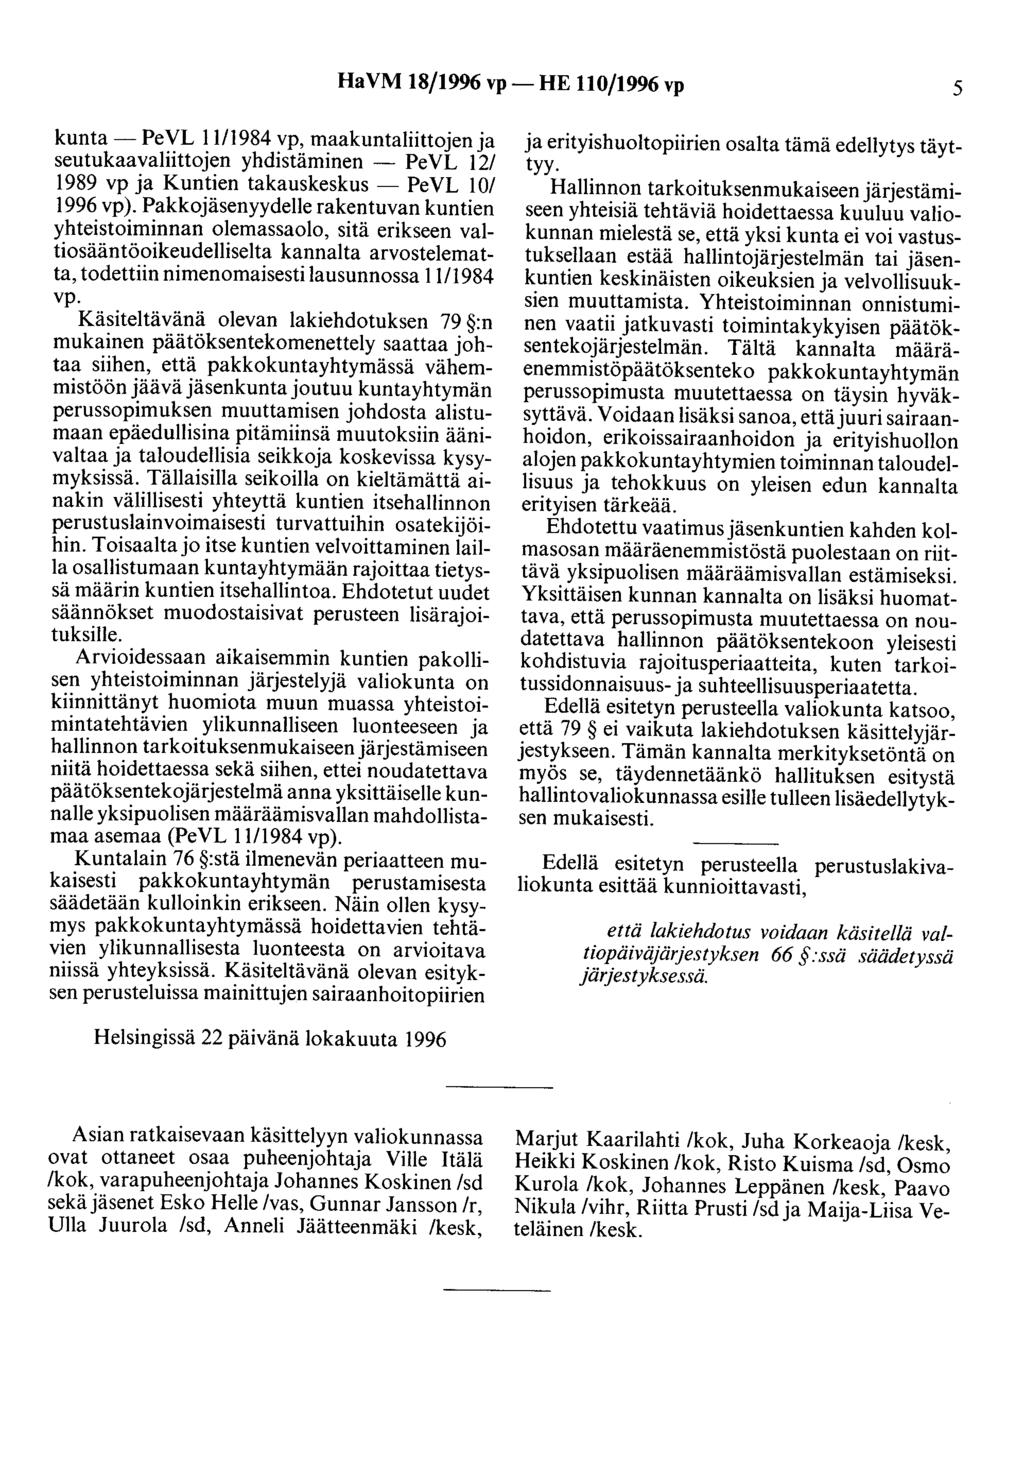 HaVM 18/1996 vp- HE 110/1996 vp 5 kunta- PeVL 1111984 vp, maakuntaliittojen ja seutukaavaliittojen yhdistäminen - PeVL 12/ 1989 vp ja Kuntien takauskeskus- PeVL 10/ 1996 vp ).